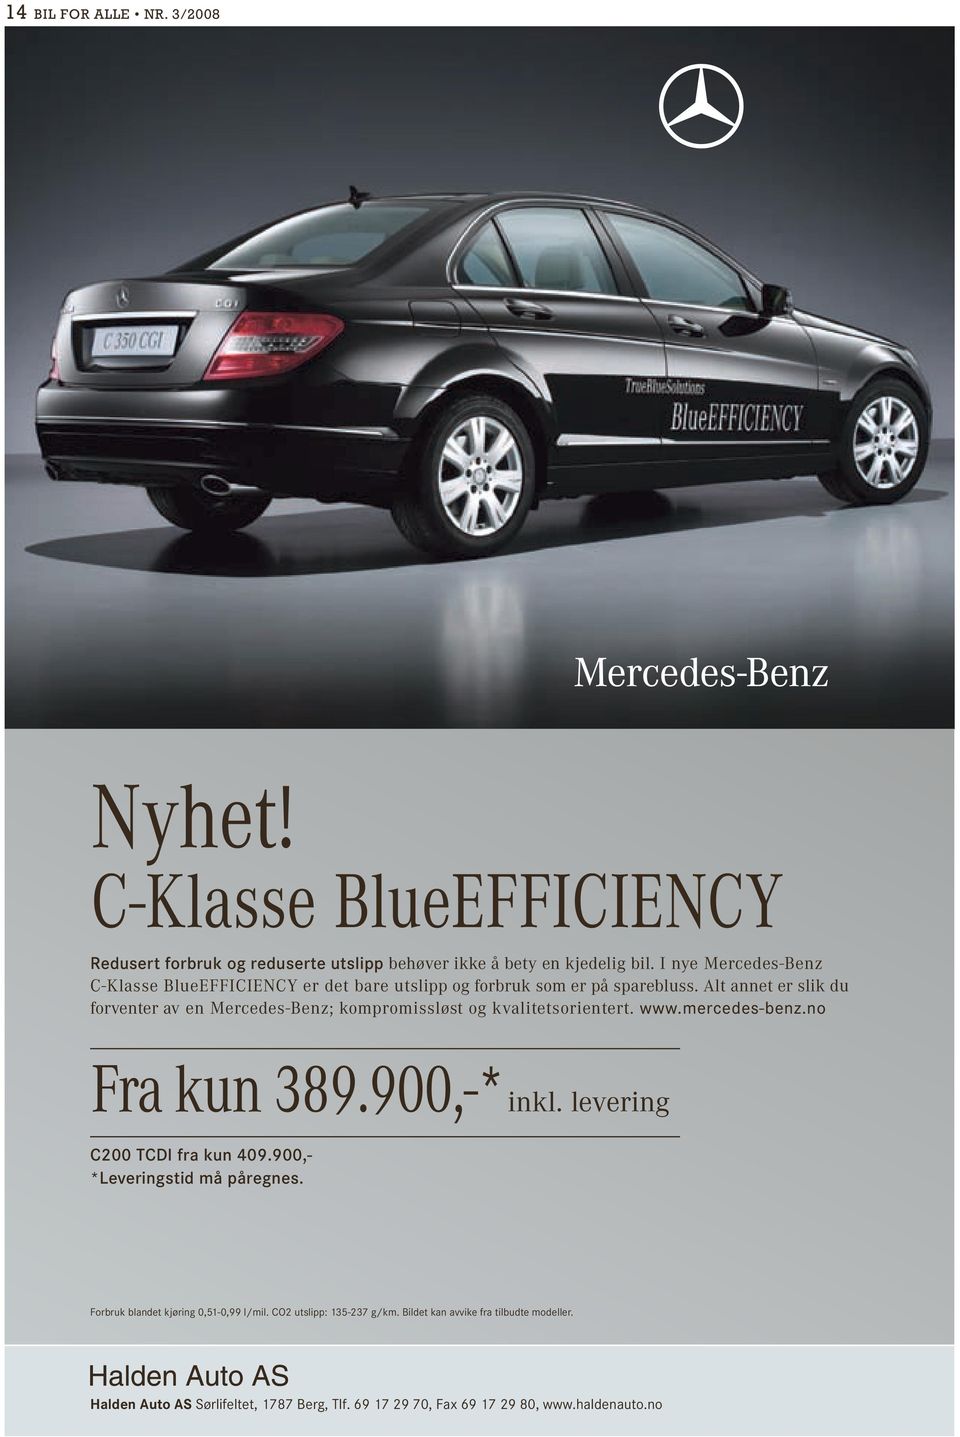 Alt annet er slik du forventer av en Mercedes-Benz; kompromissløst og kvalitetsorientert. www.mercedes-benz.no Fra kun 389.900,-* inkl.